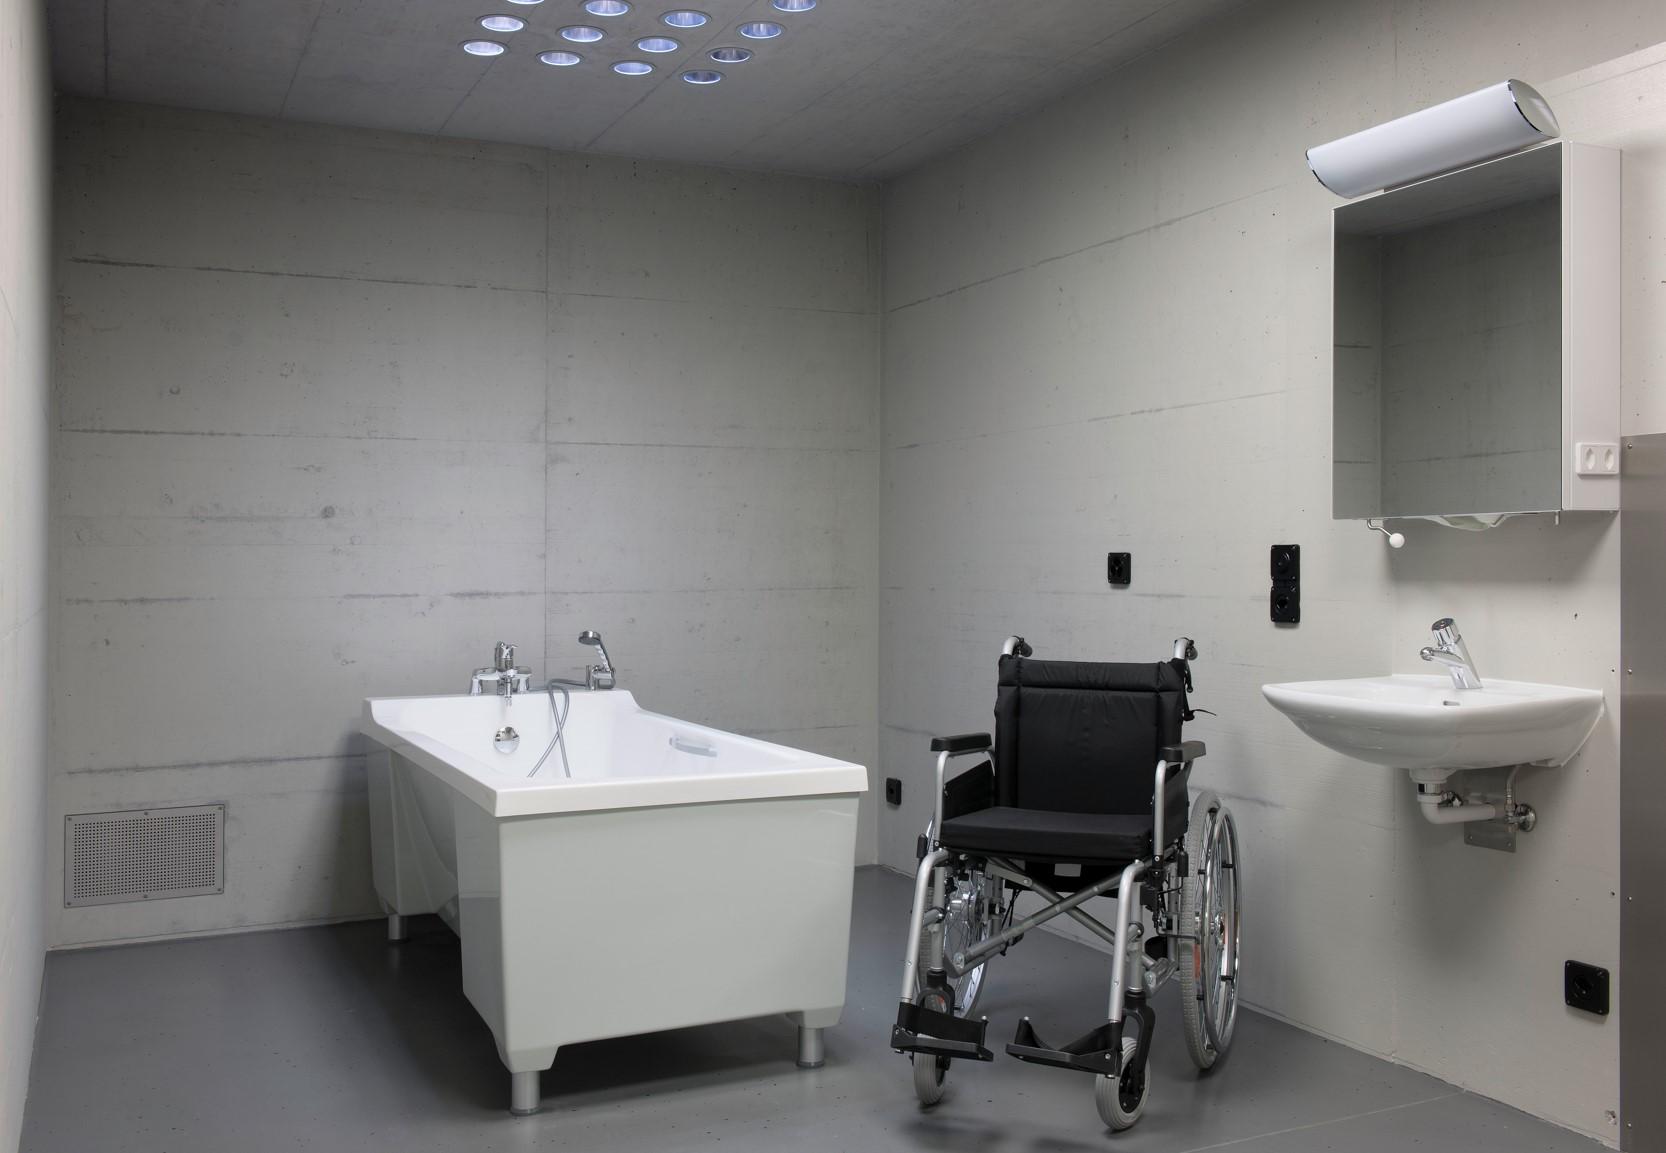 كرسي متحرك وحوض استحمام داخل زنزانة